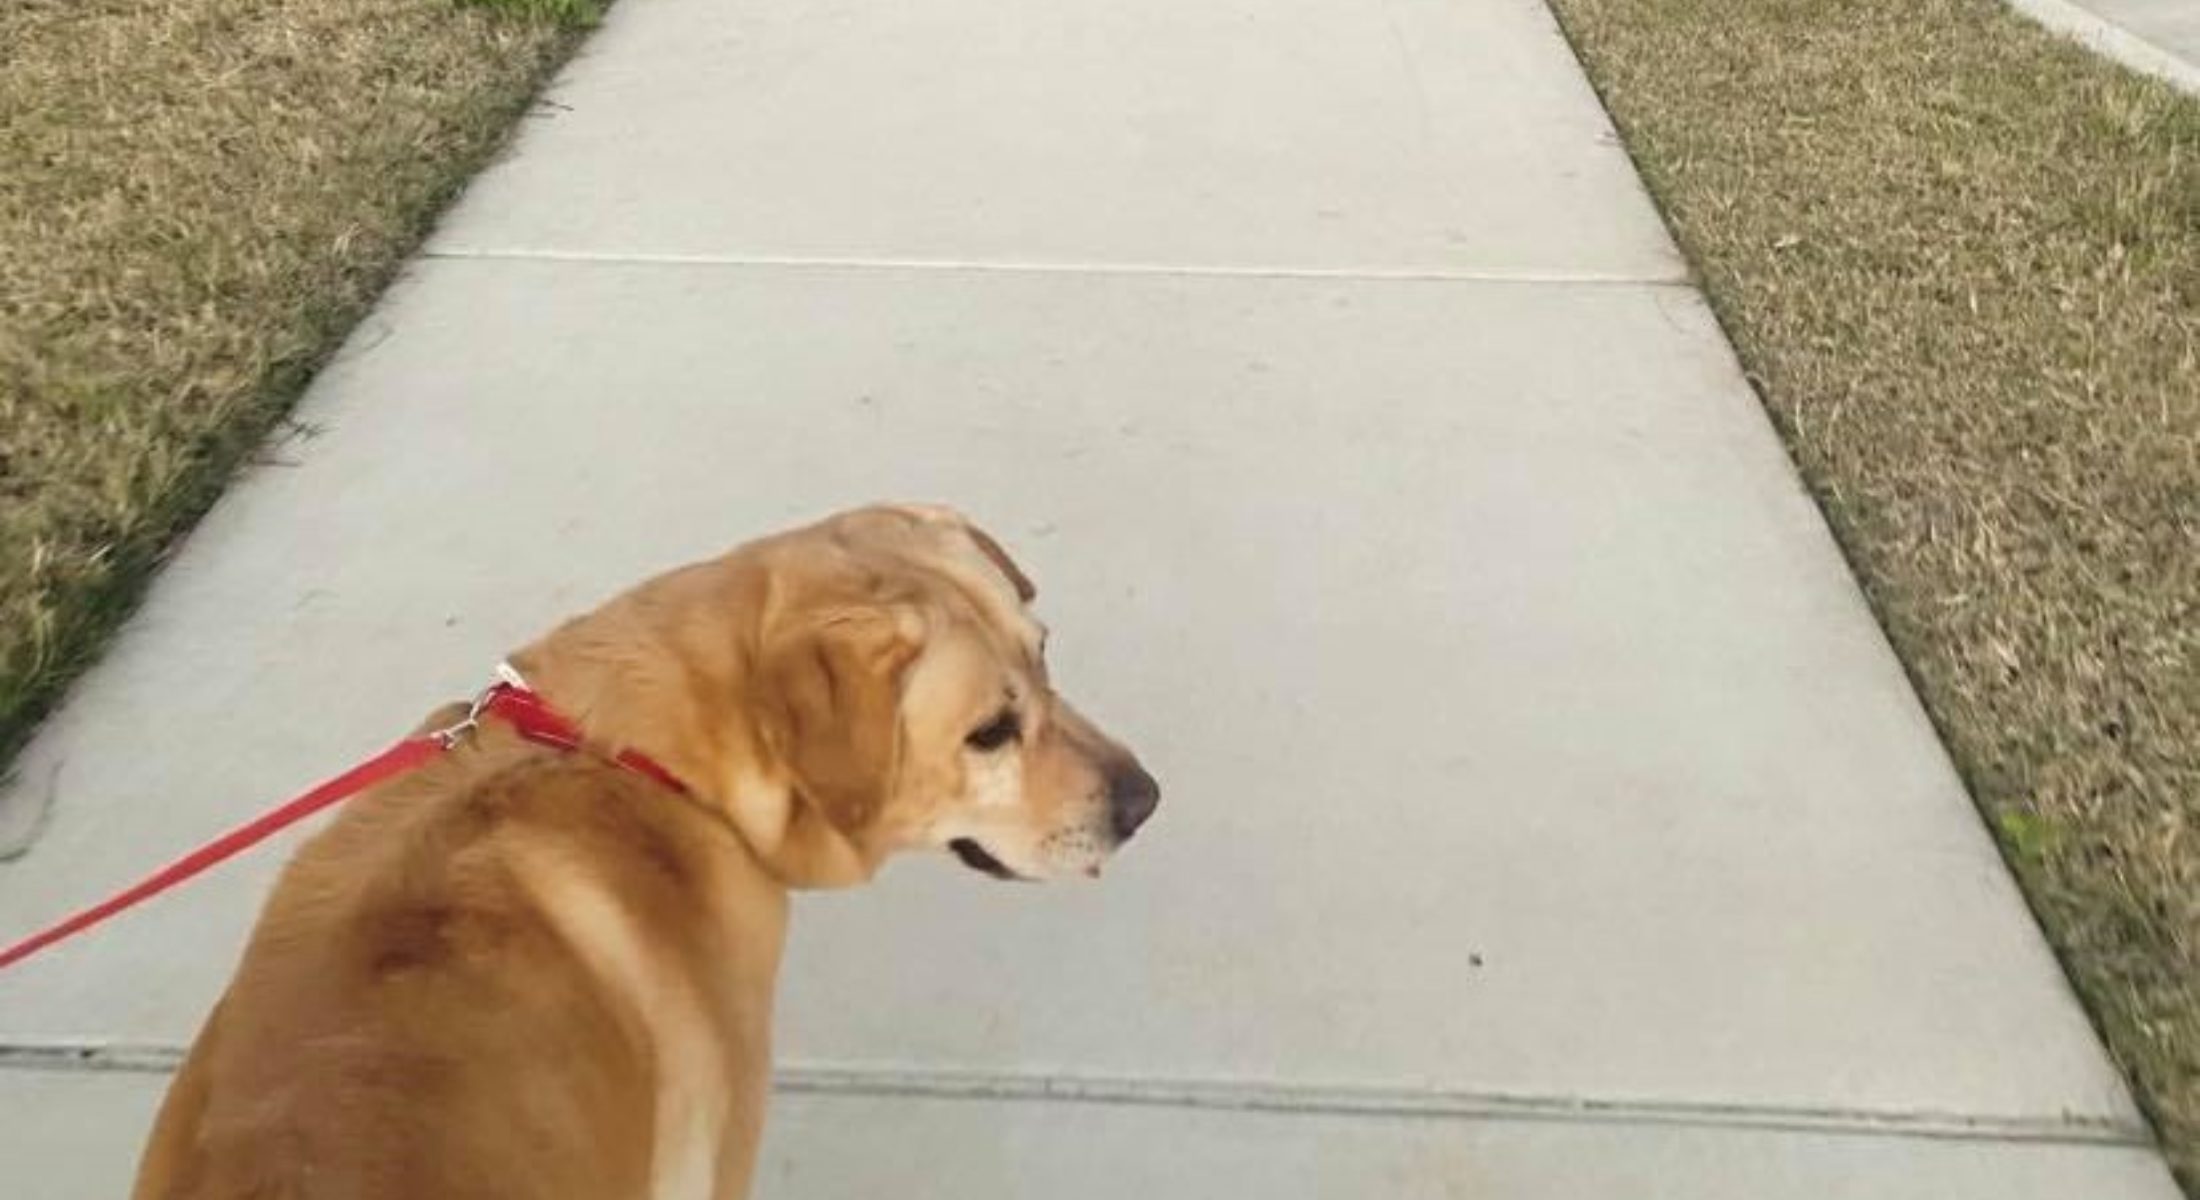 Dog walks parks Moreton Bay Region credit alexheeps